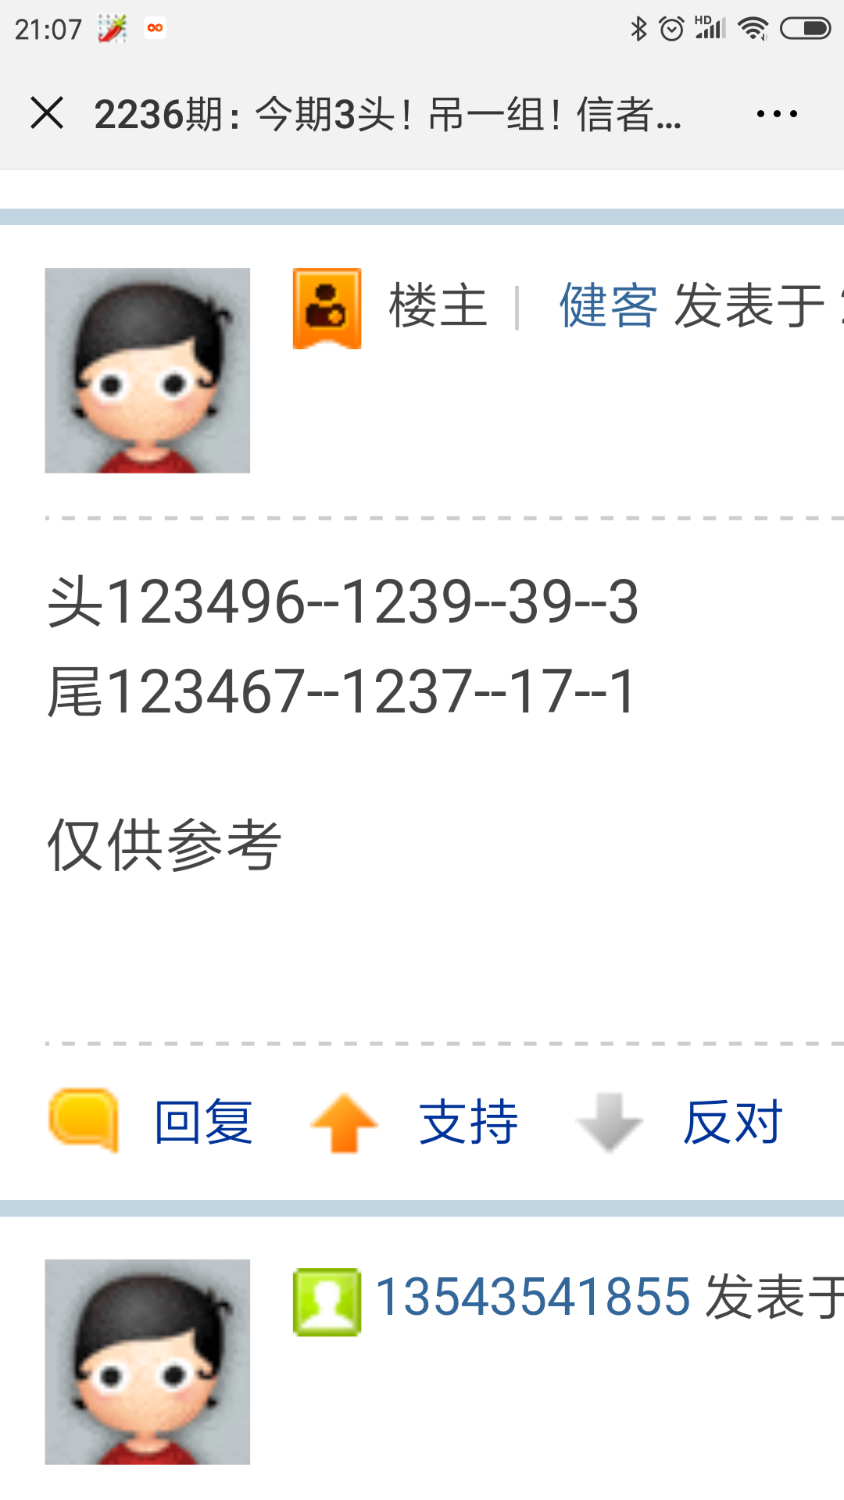 Screenshot_2018-12-07-21-07-10-914_com.tencent.mm.png